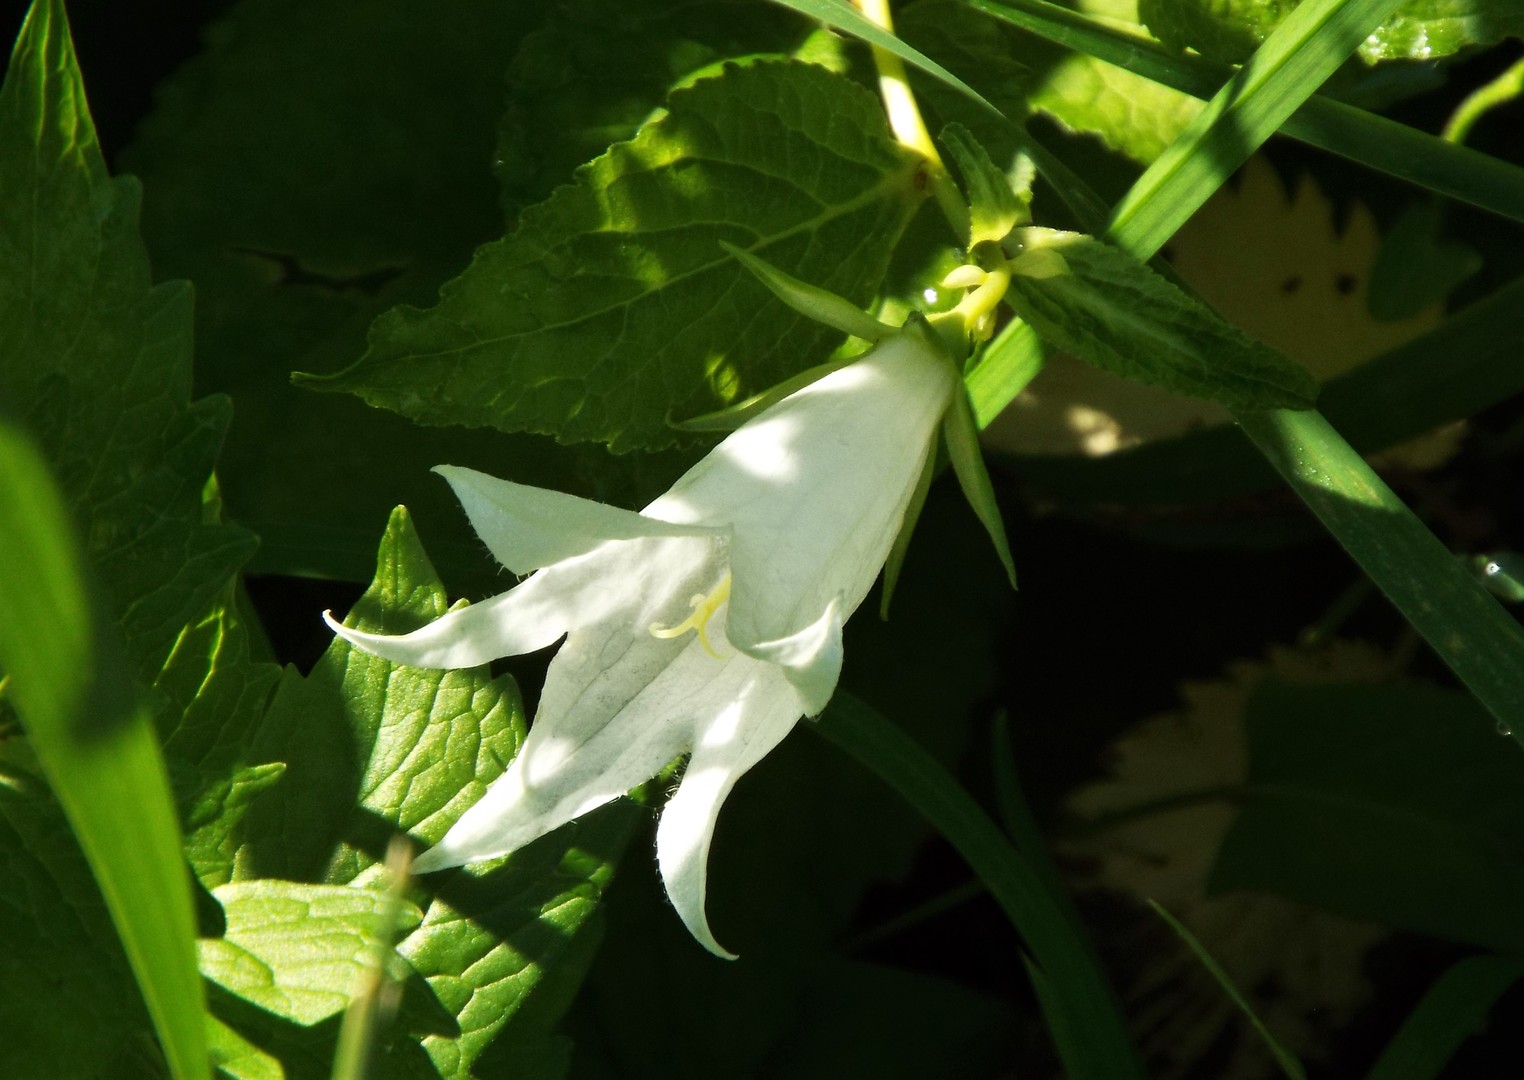 Домашний цветок цветущий белыми колокольчиками фото название